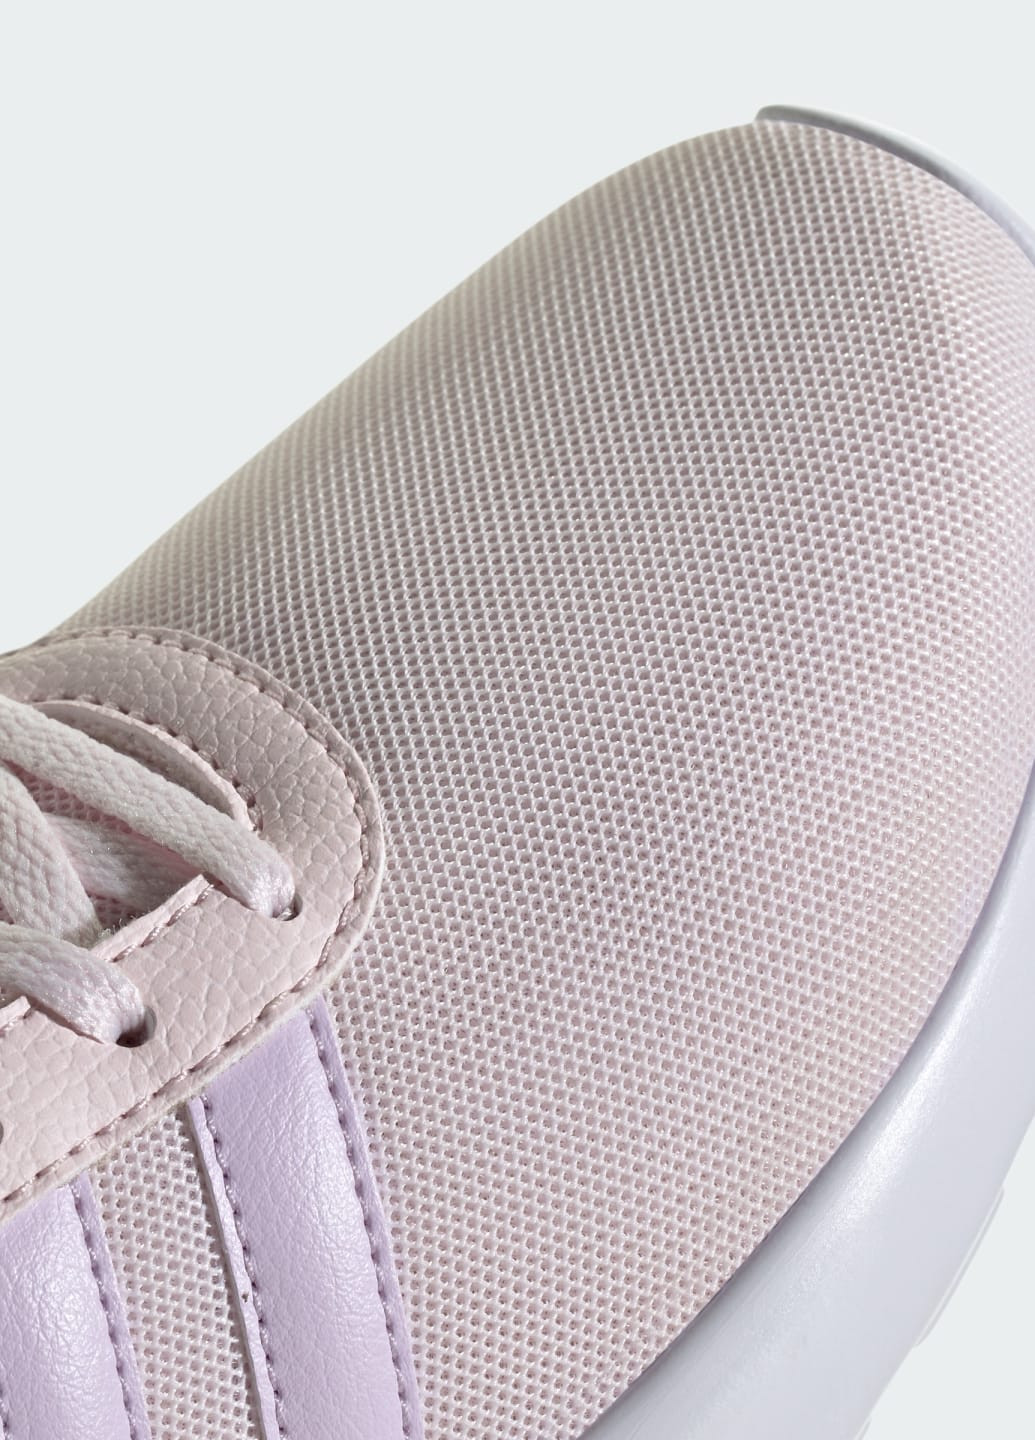 Рожеві всесезонні кросівки lite racer 3.0 adidas